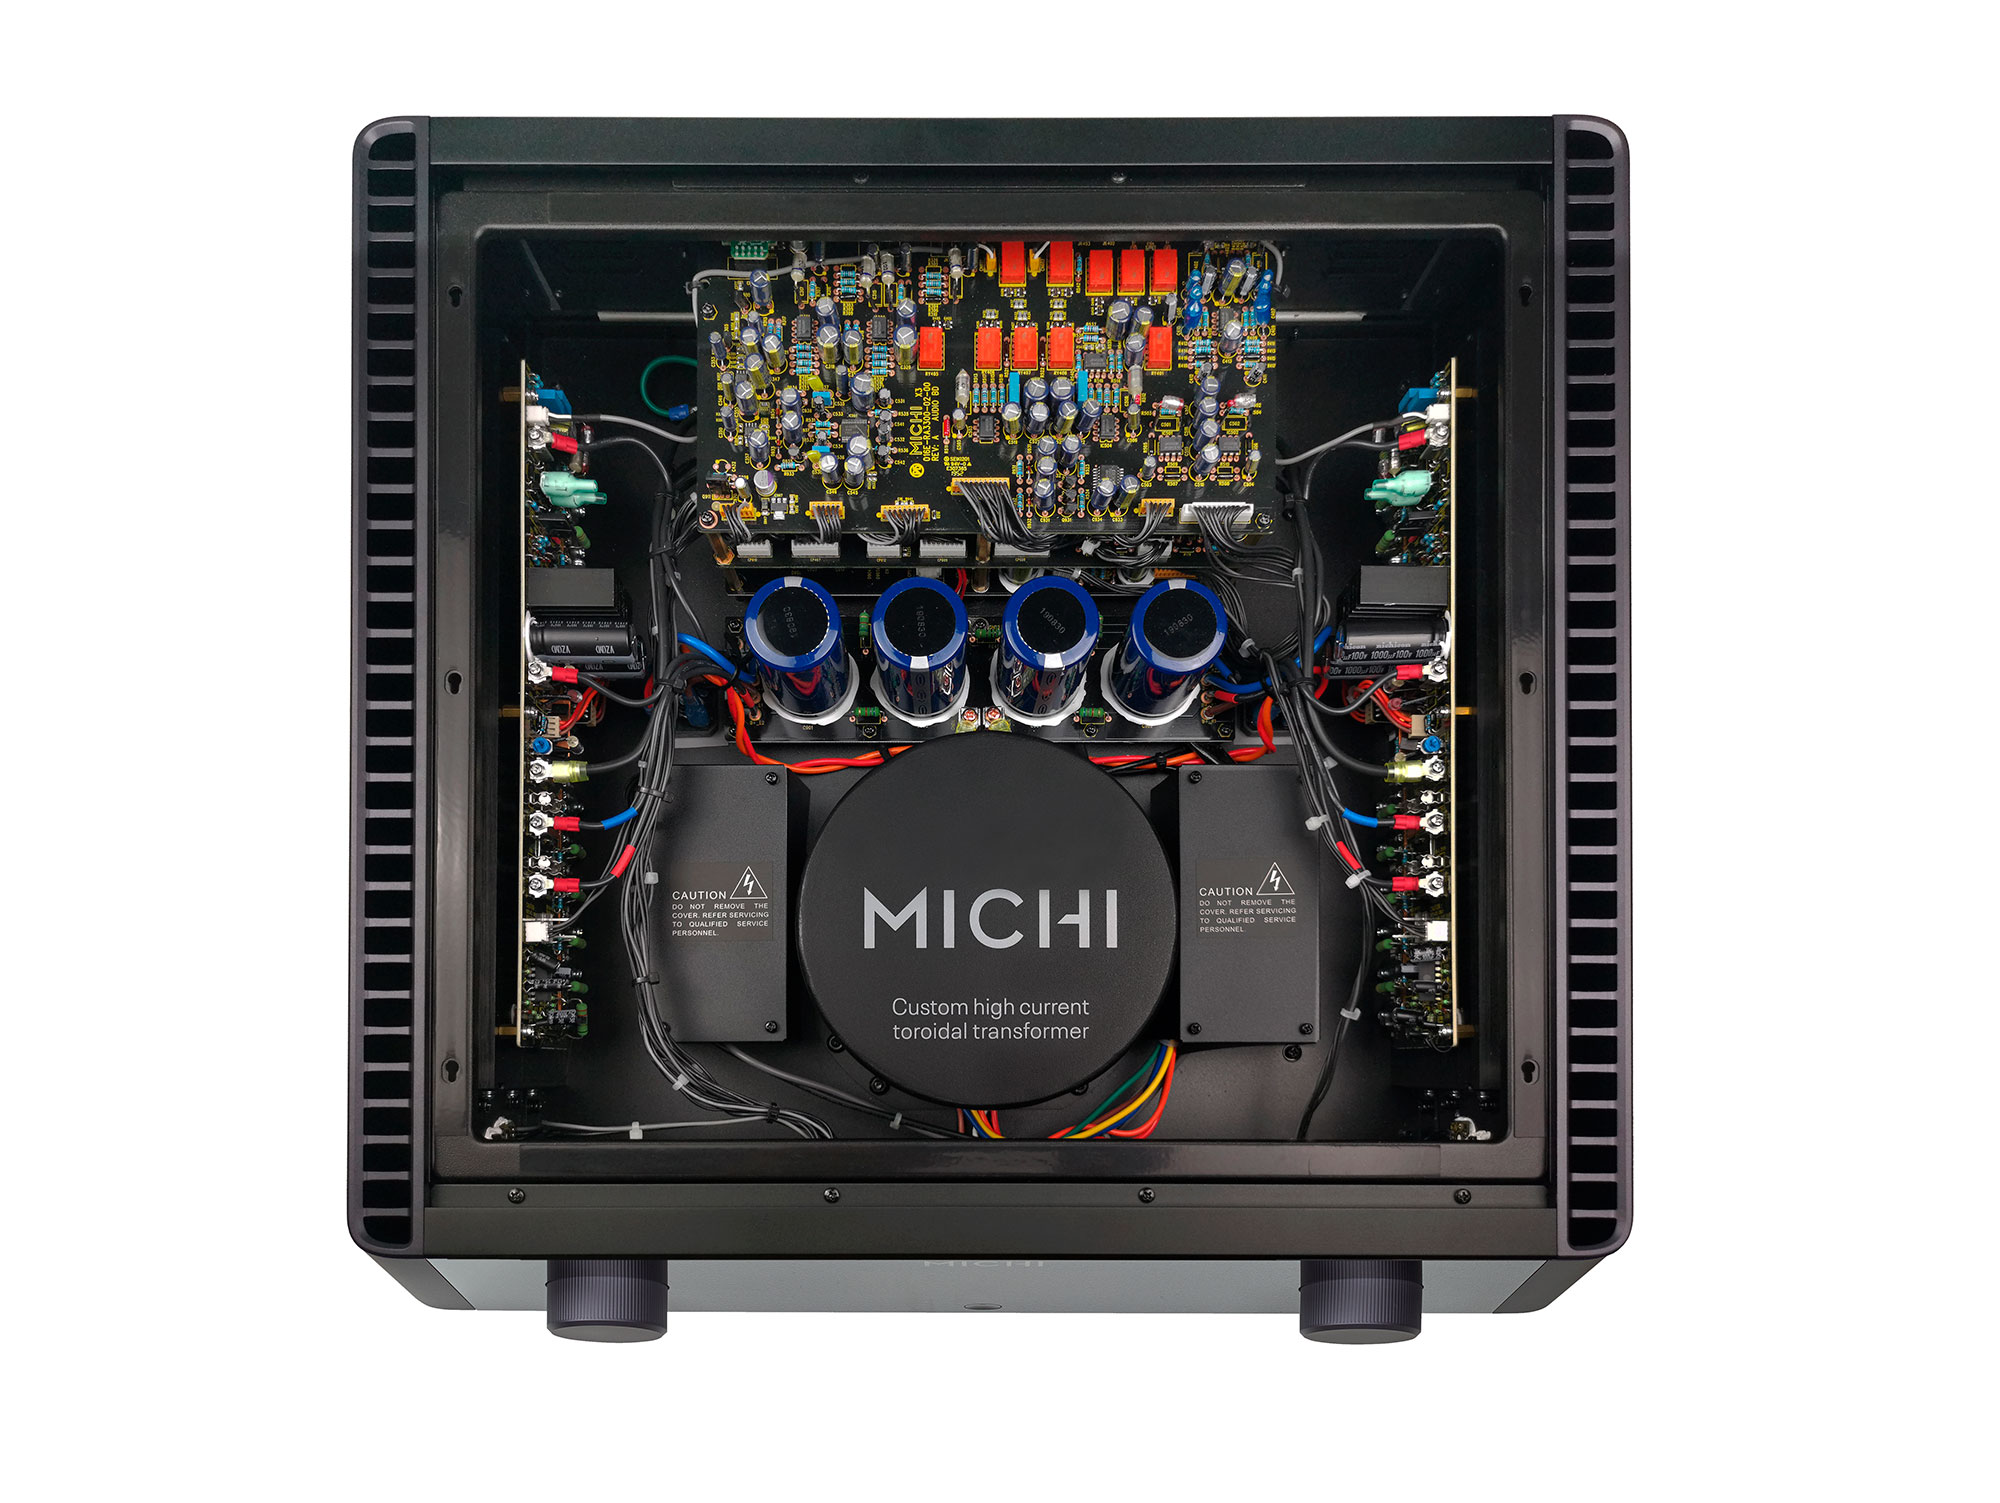 MICHI X3 (Black)
(Demo) สินค้าตัวโชว์ราคาพิเศษ